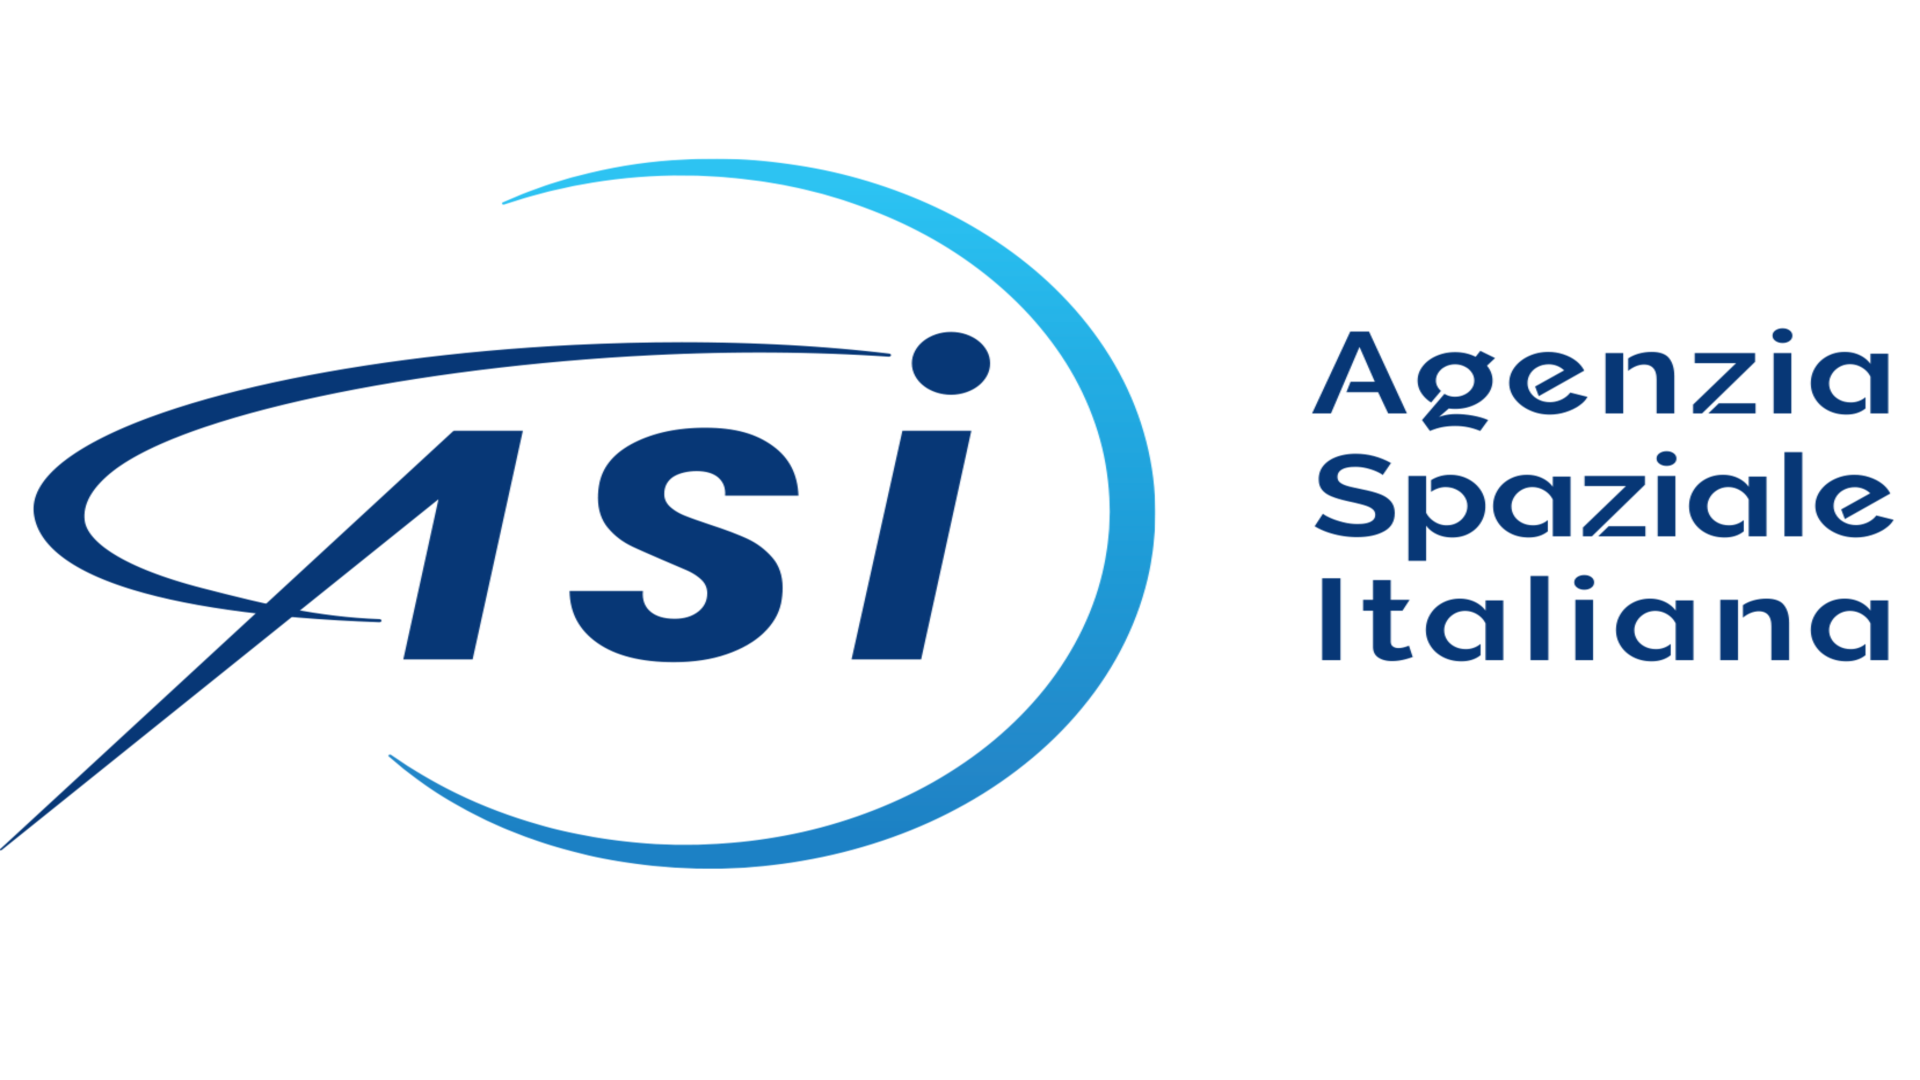 ASI - Al via la nuova piattaforma di Amministrazione Trasparente dell’Agenzia Spaziale Italiana